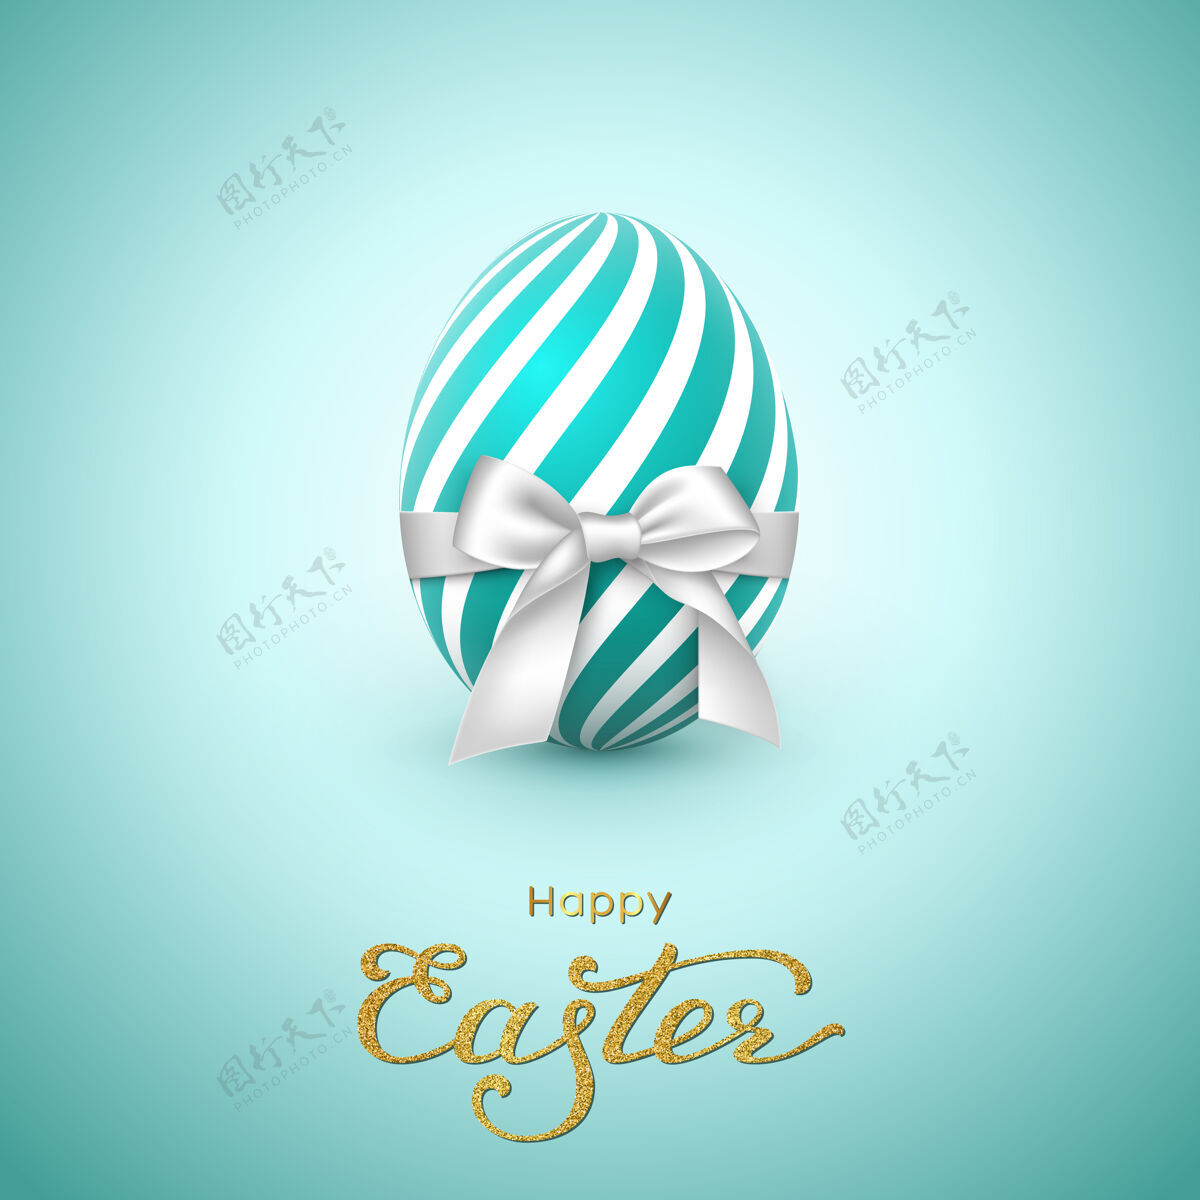 快乐复活节贺卡闪闪发光的字母 白色蝴蝶结现实的鸡蛋卡片字母脚本